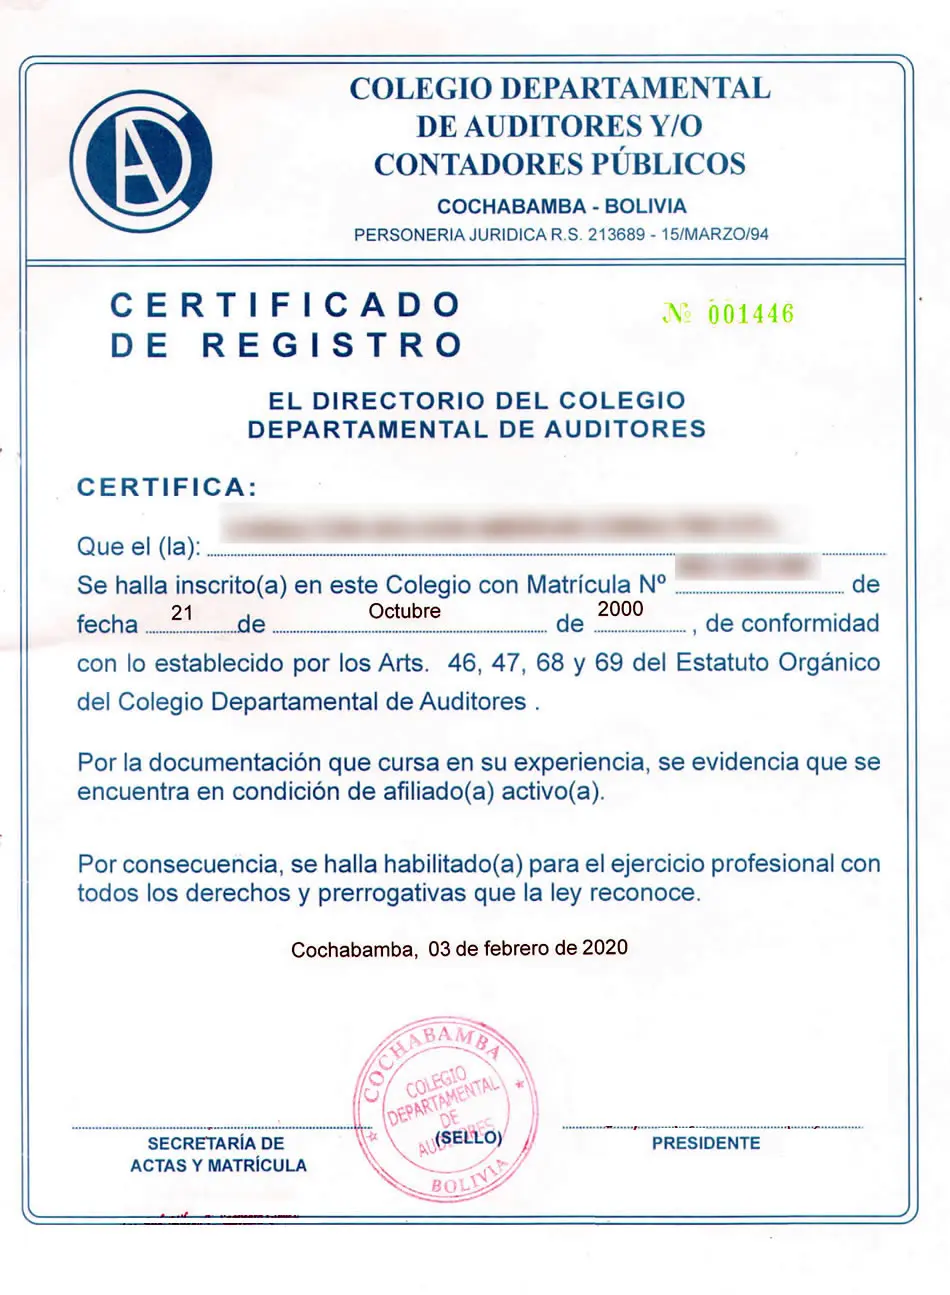 certificaciòn literal del auditor en cepba - Qué es el certificado literal